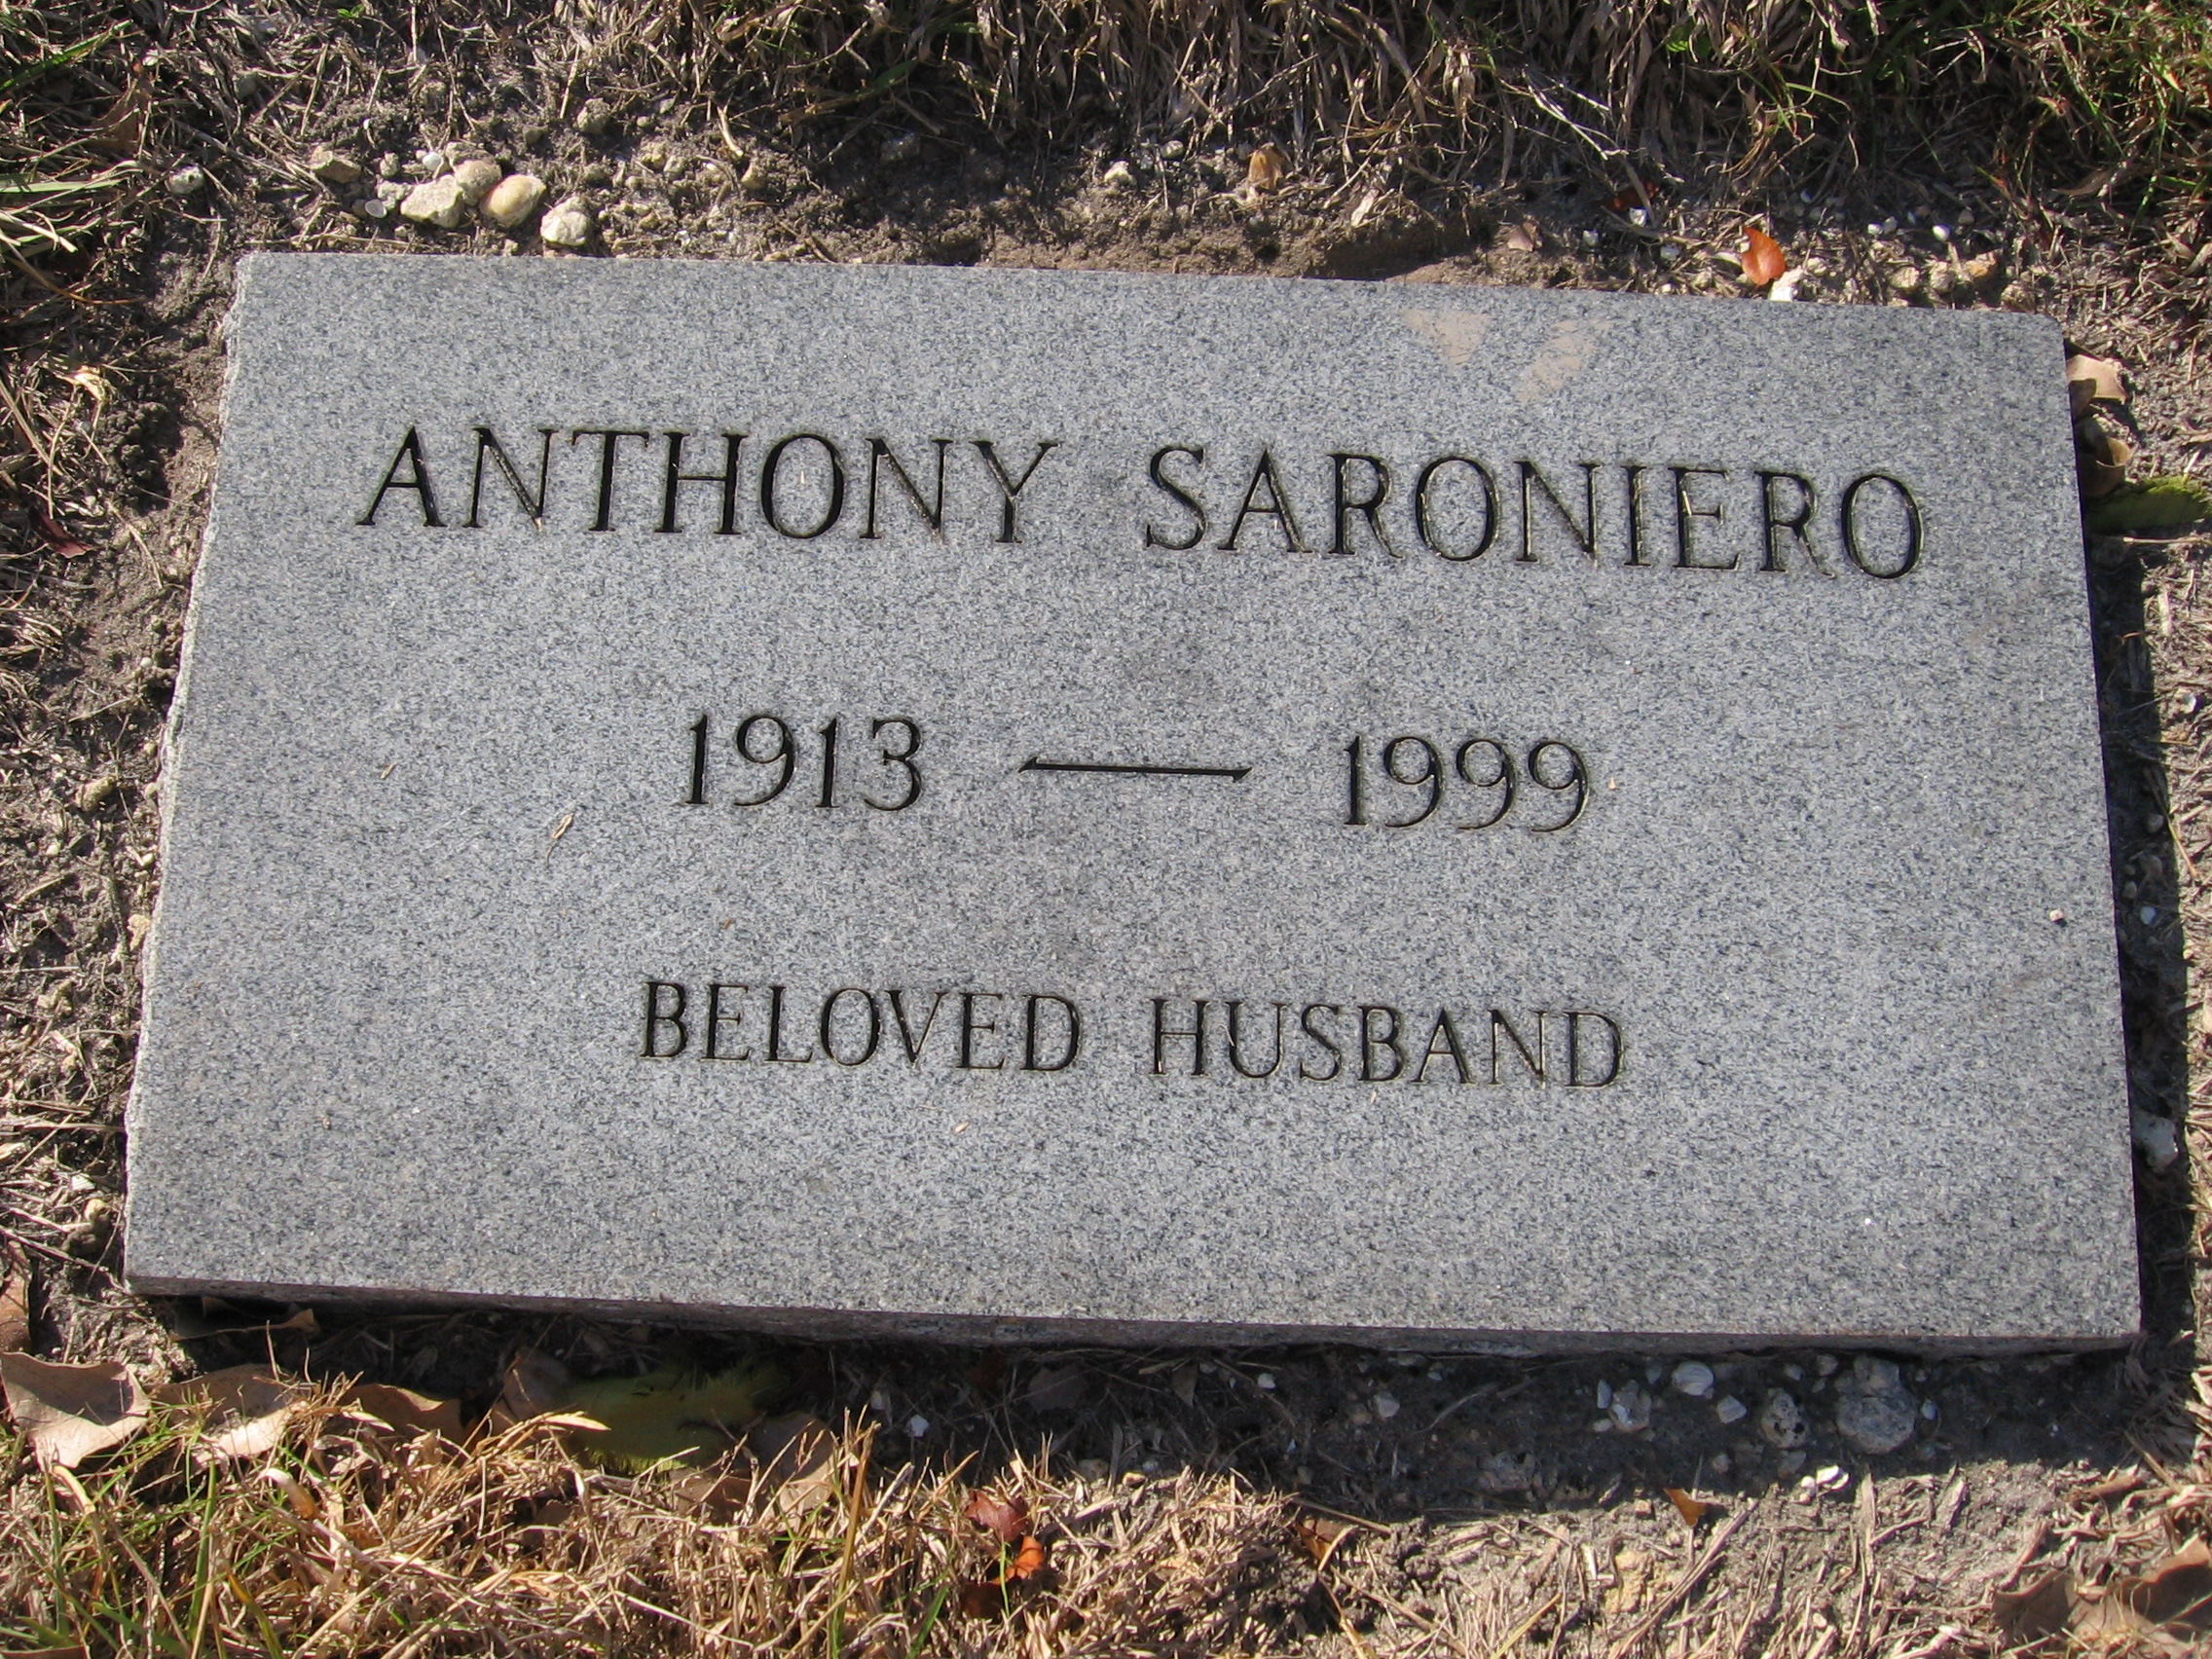 Anthony Saroniero